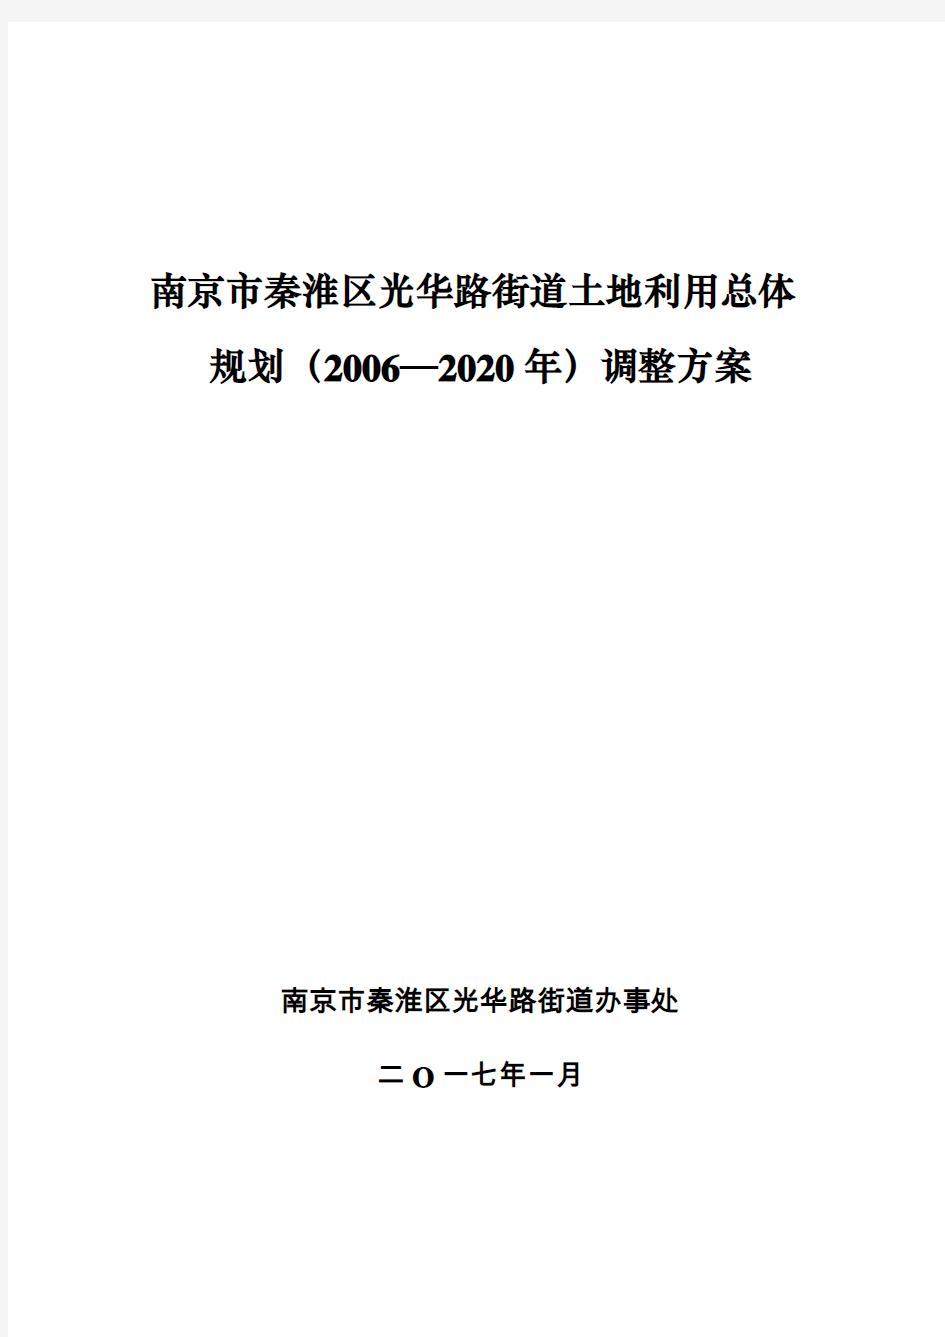 南京市秦淮区光华路街道土地利用总体规划(2006—2020年)调整方案